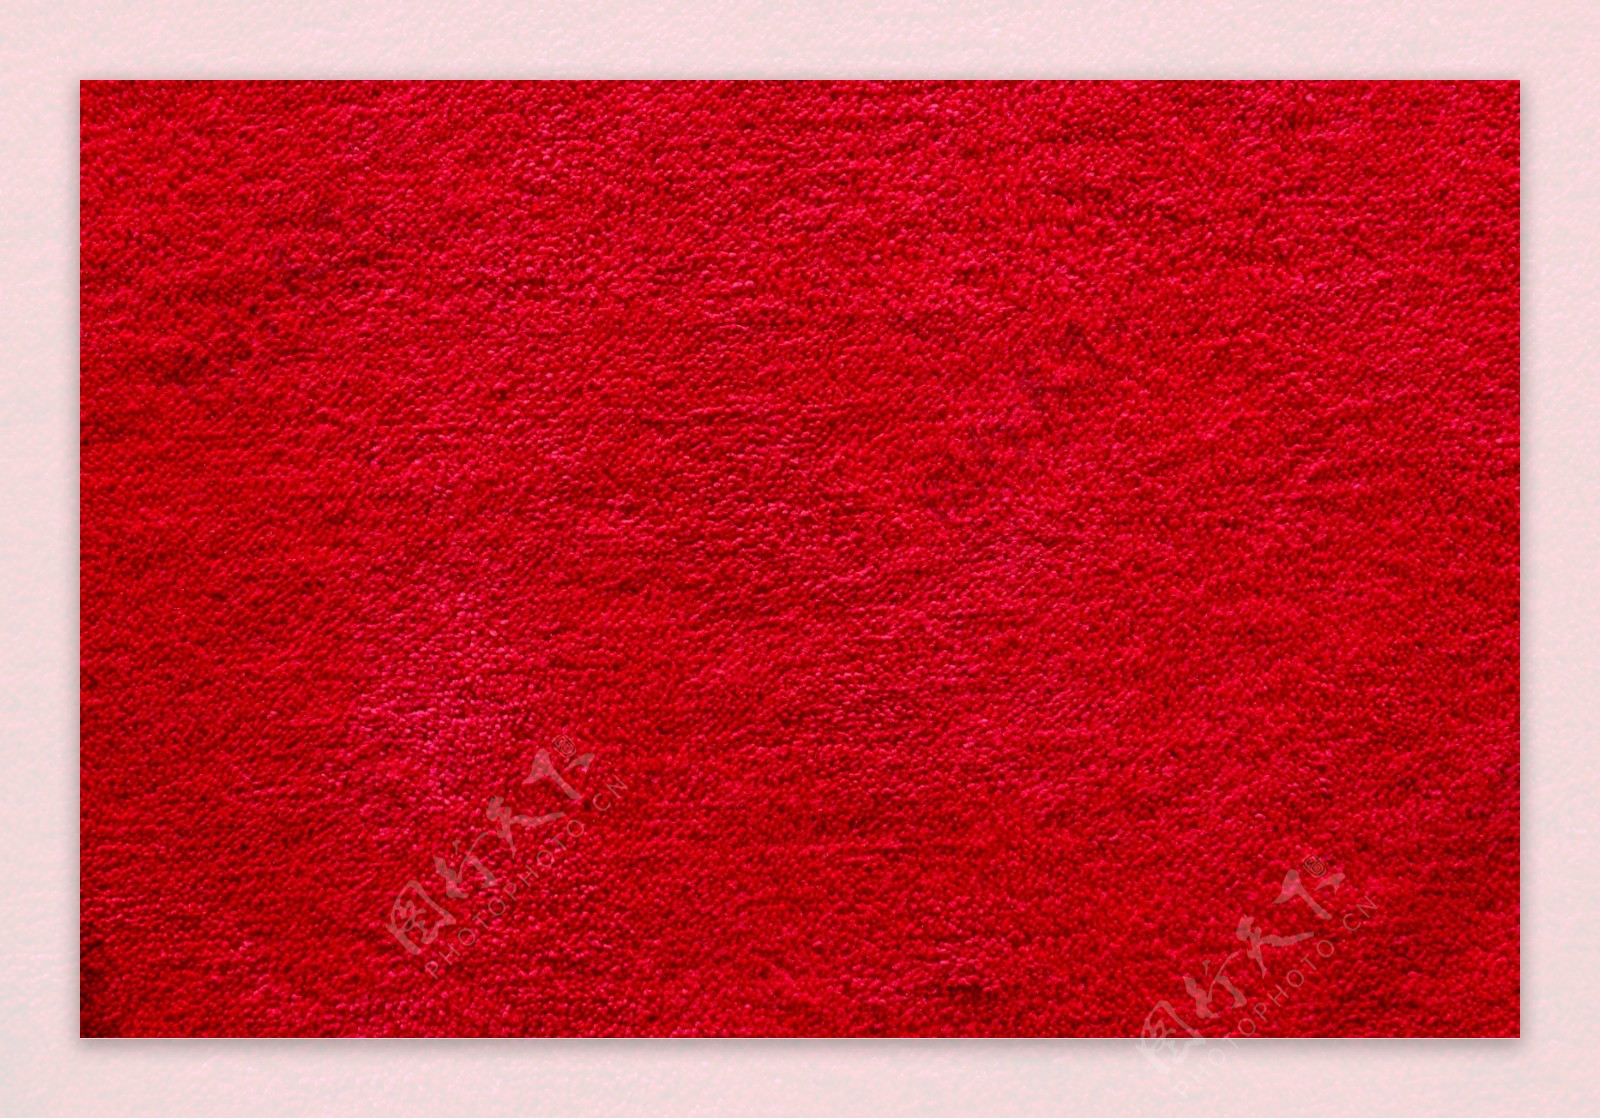 红色毛毯背景